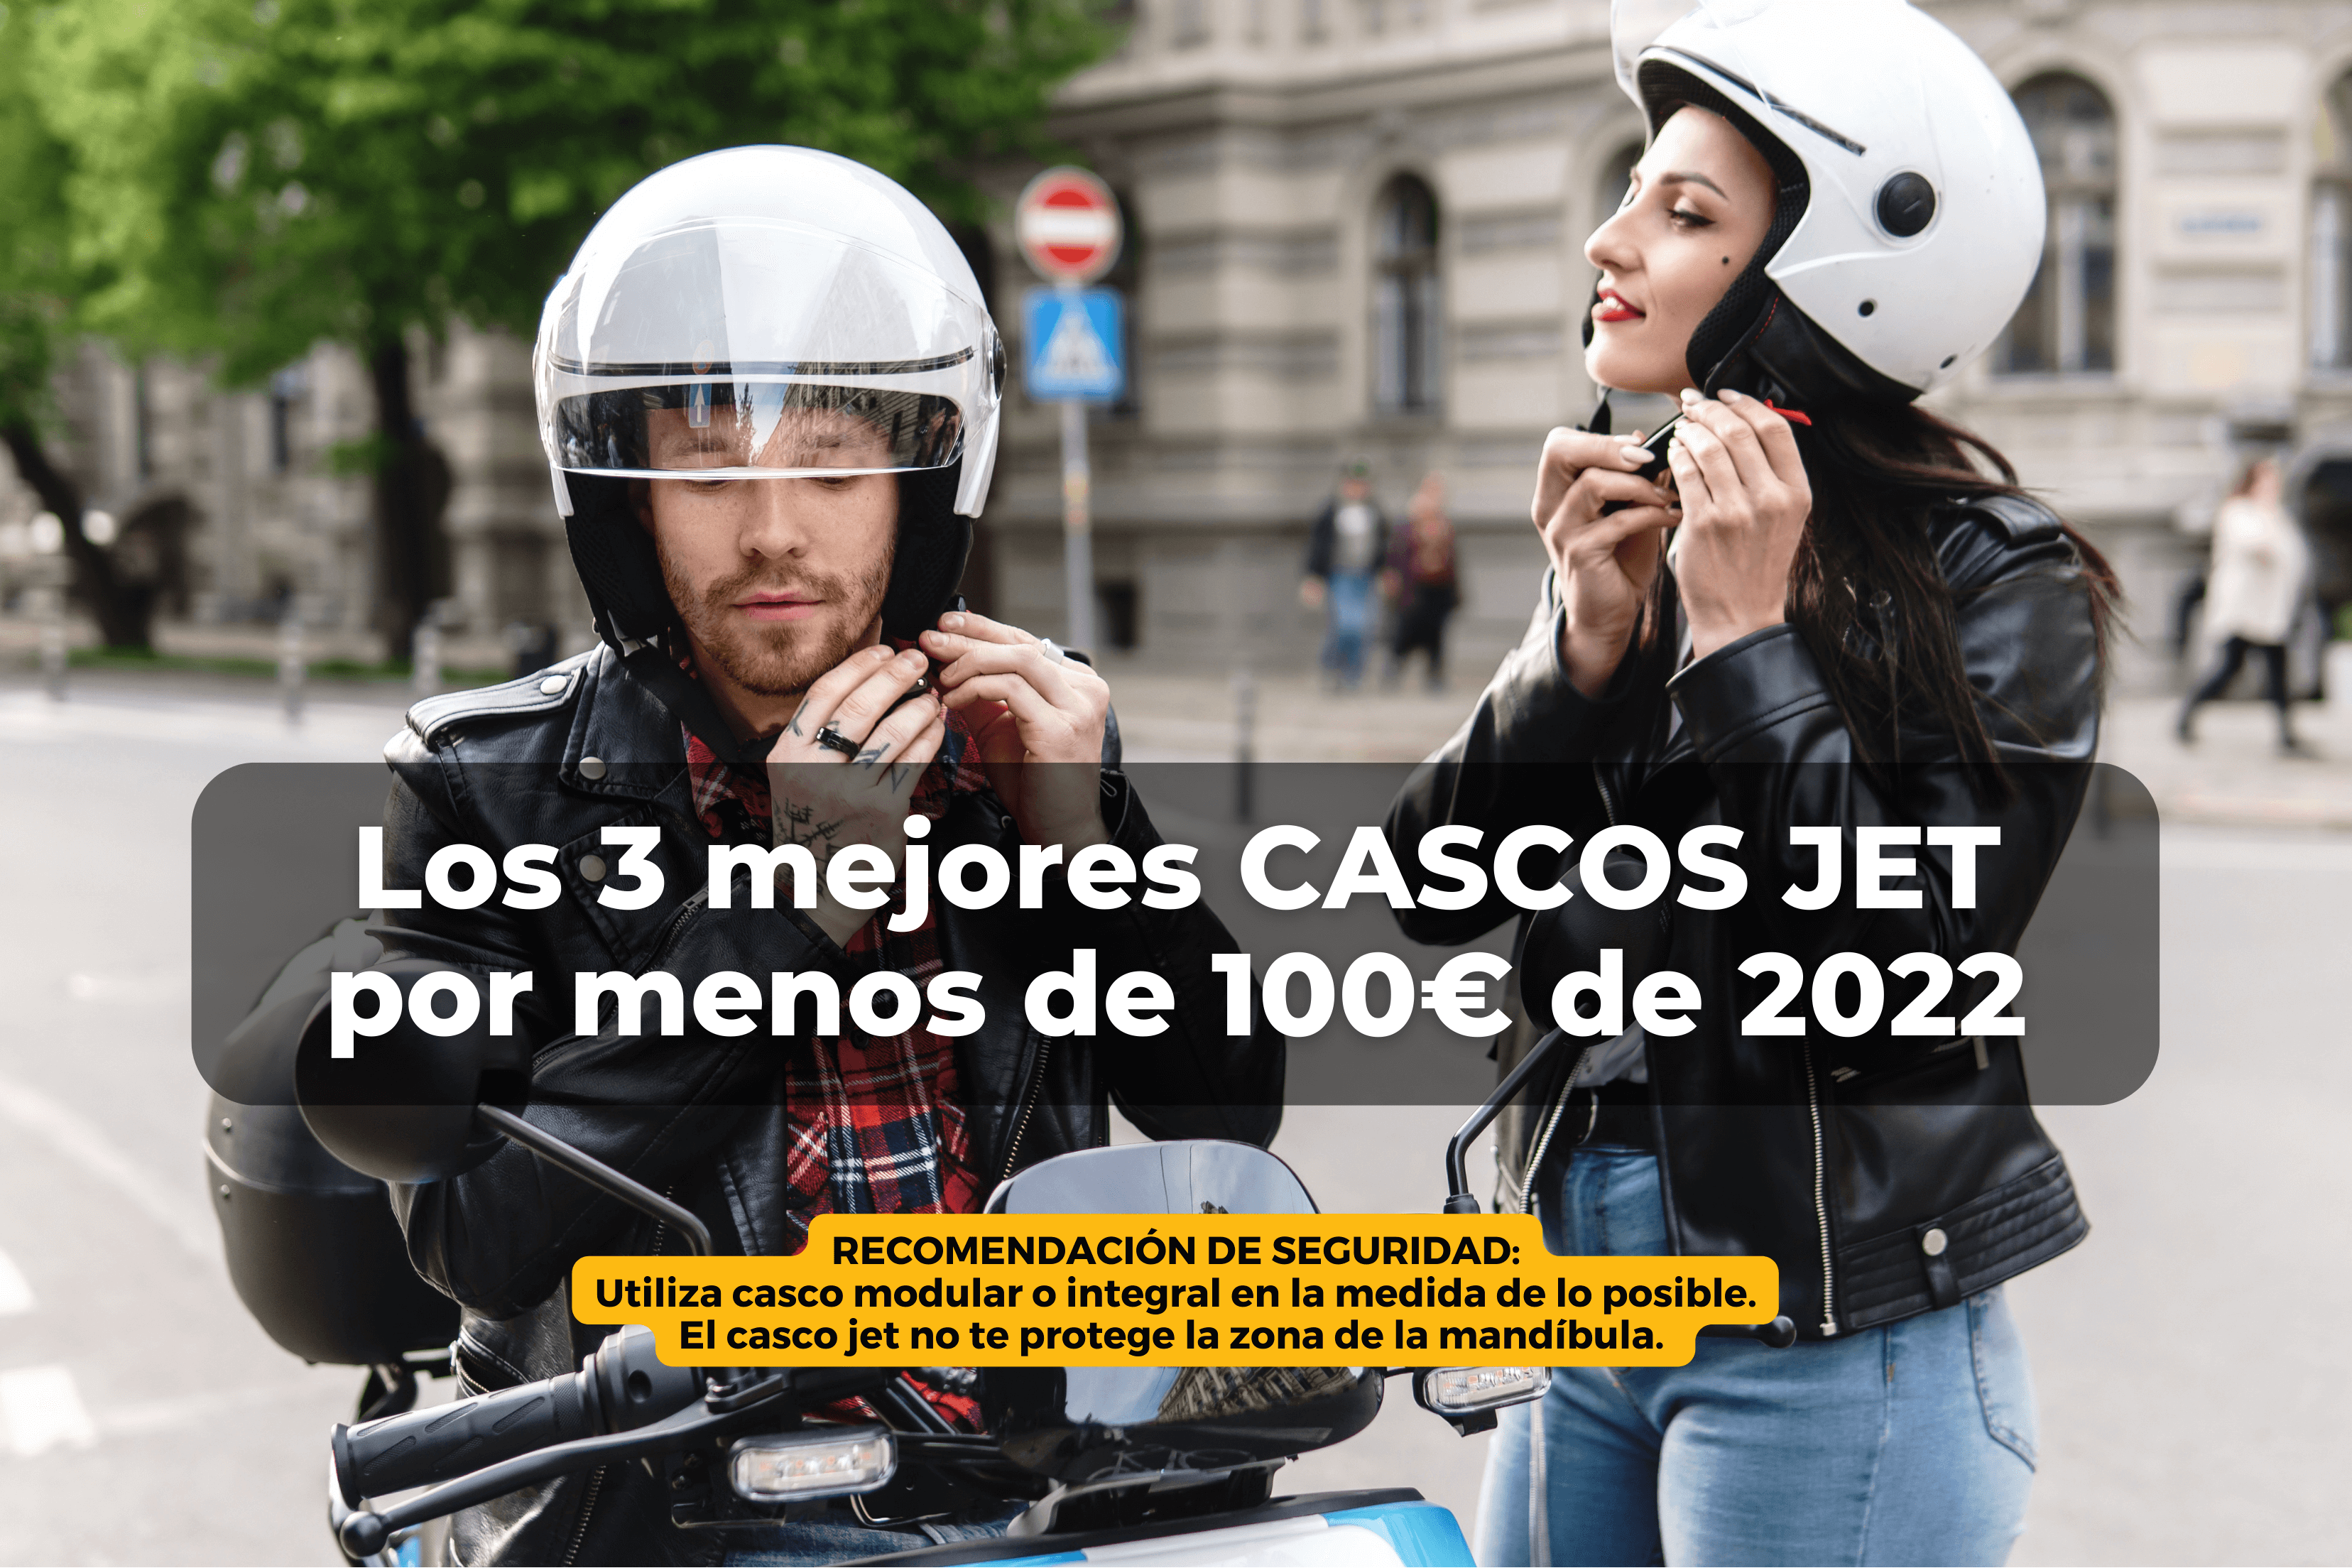 Los 3 mejores cascos de moto por menos de 100 euros de 2022